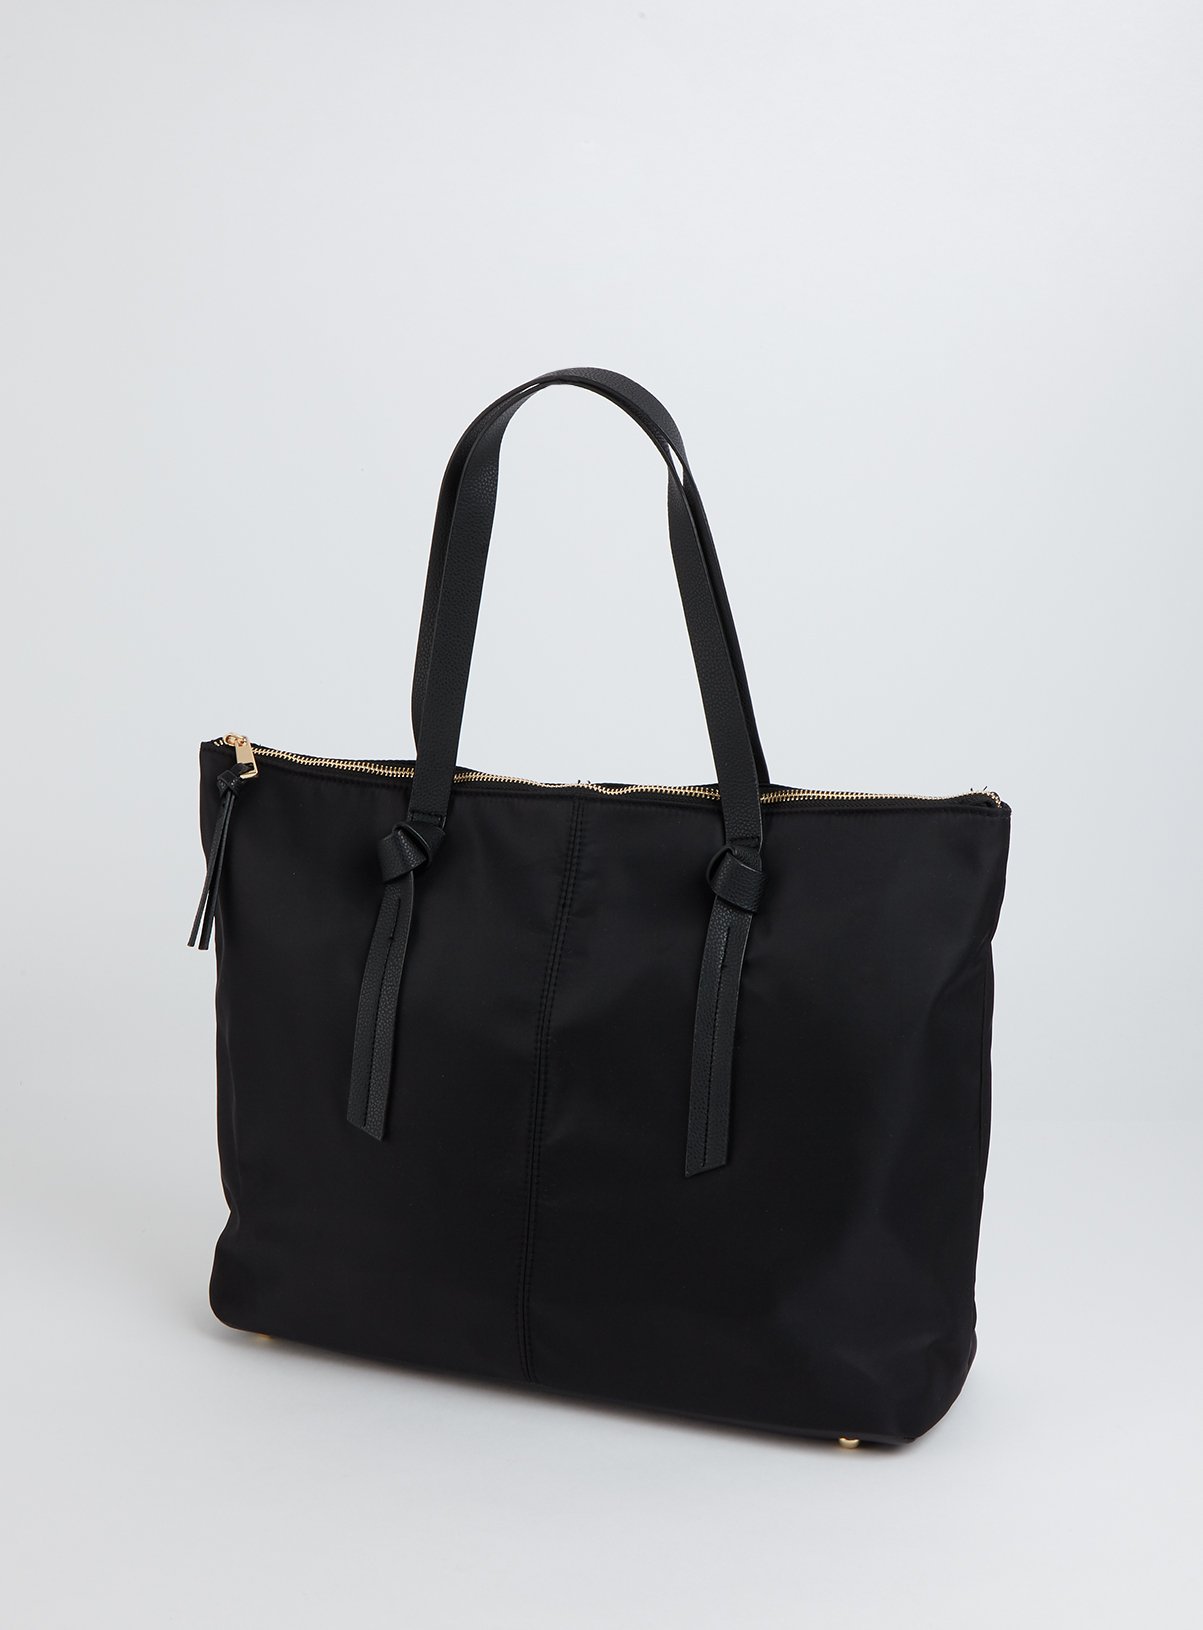 Black Nylon Shopper Bag Review